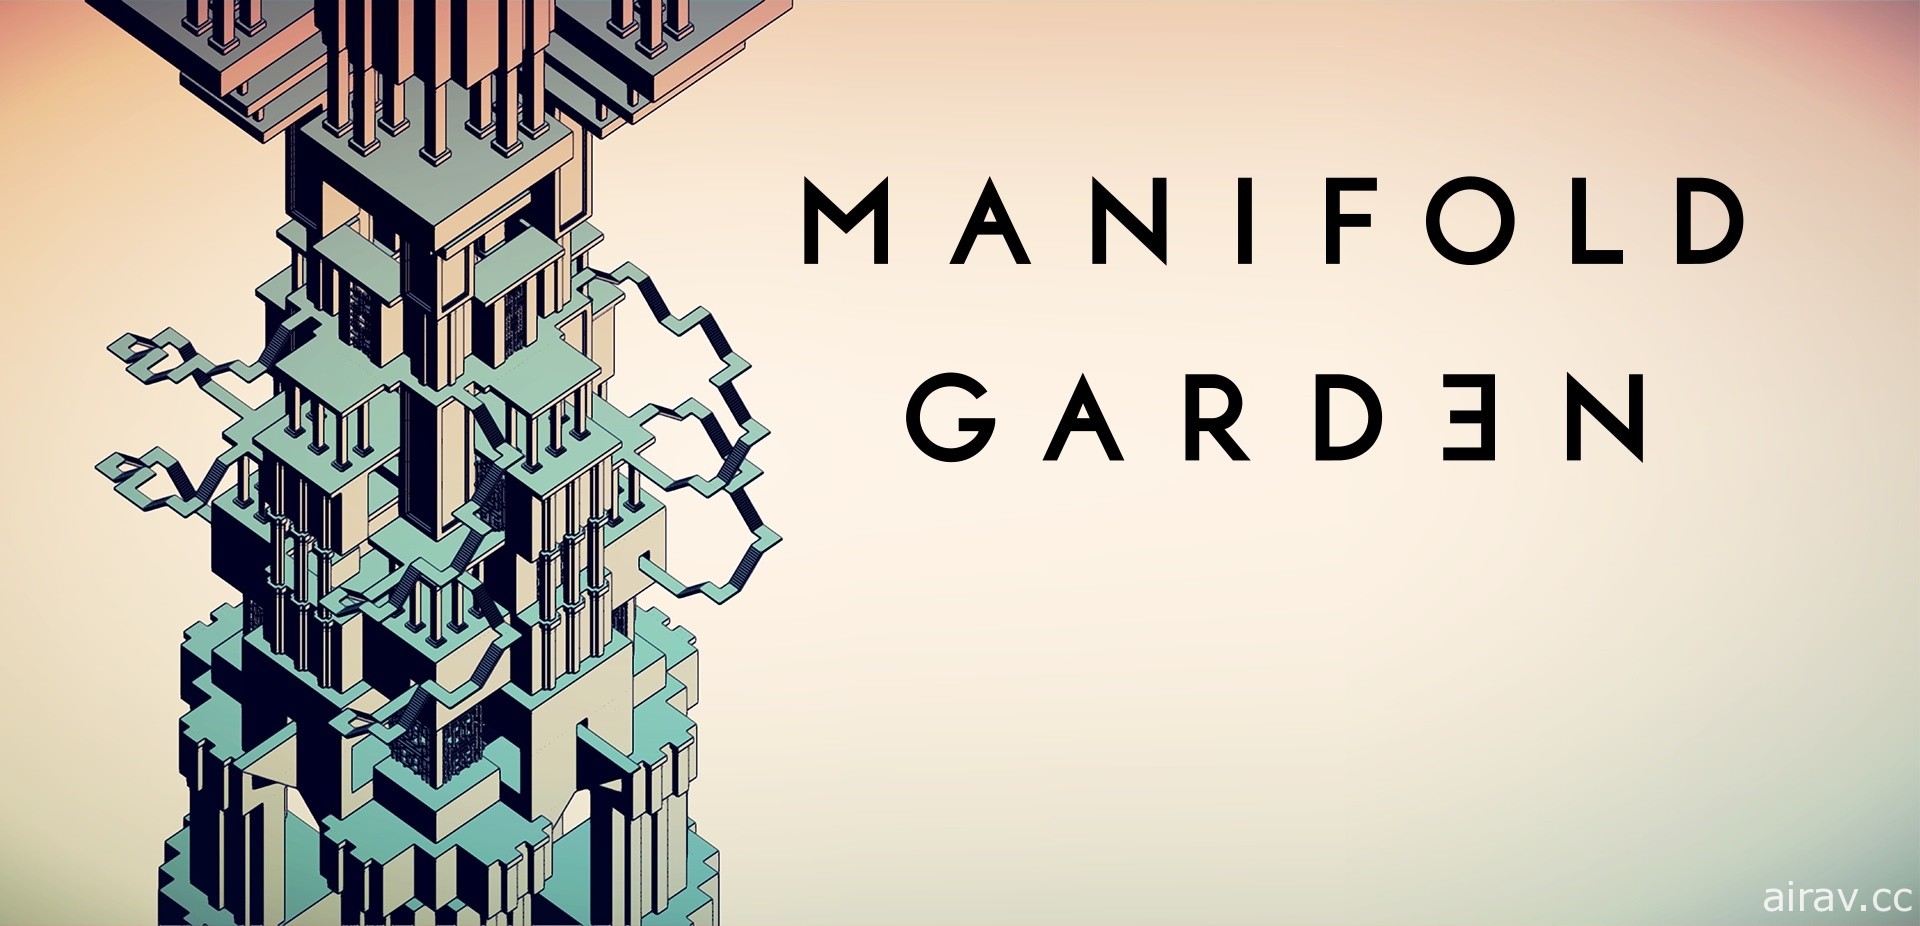 錯位藝術遊戲《多重花園 Manifold Garden》實體版特典公開